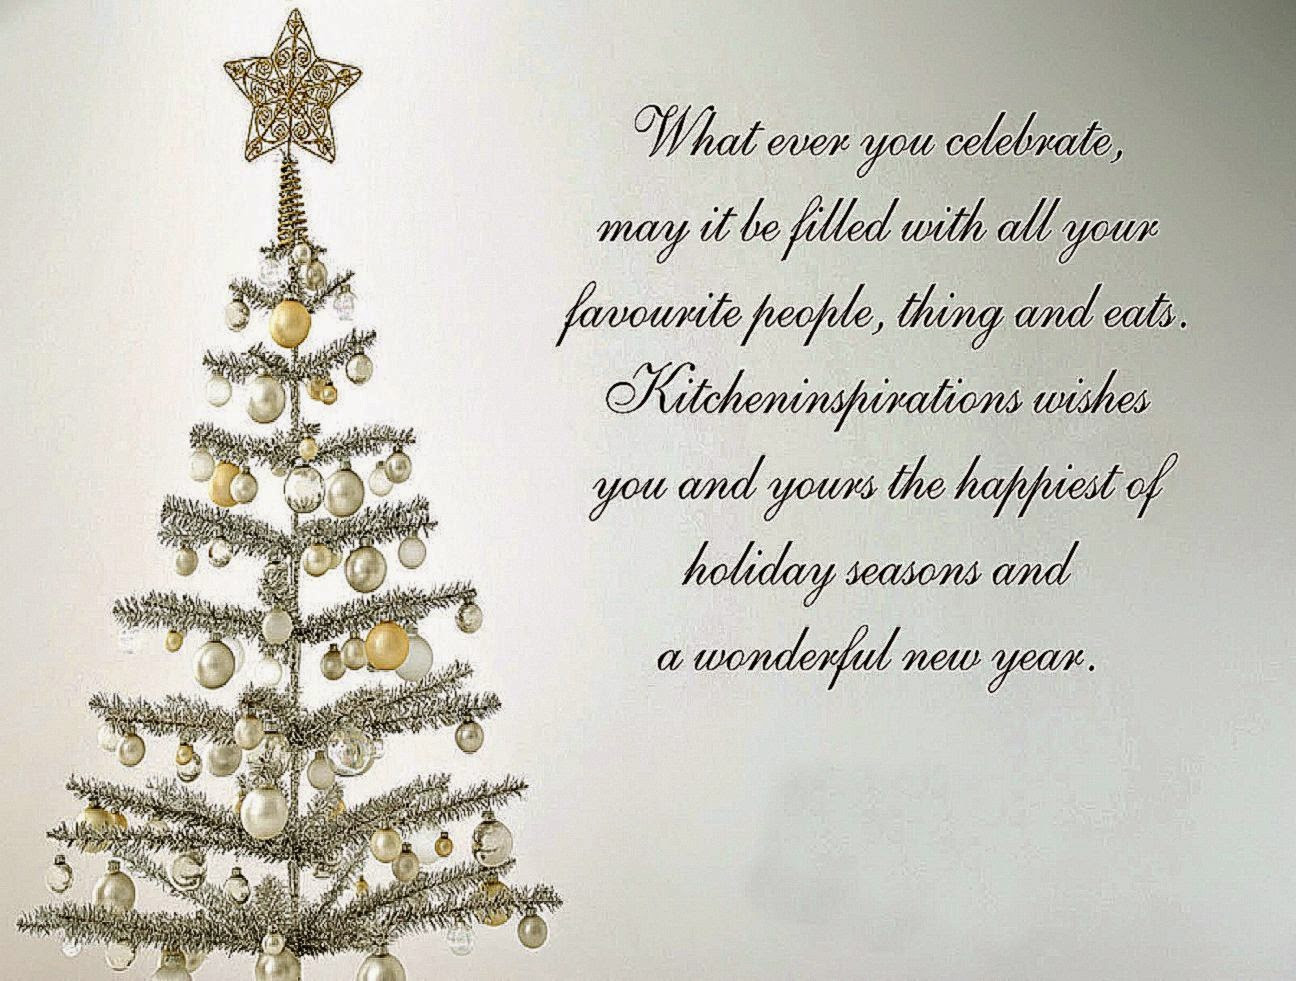 Inspirational Quote For Christmas
 [49 ] Inspirational Christmas Wallpaper on WallpaperSafari